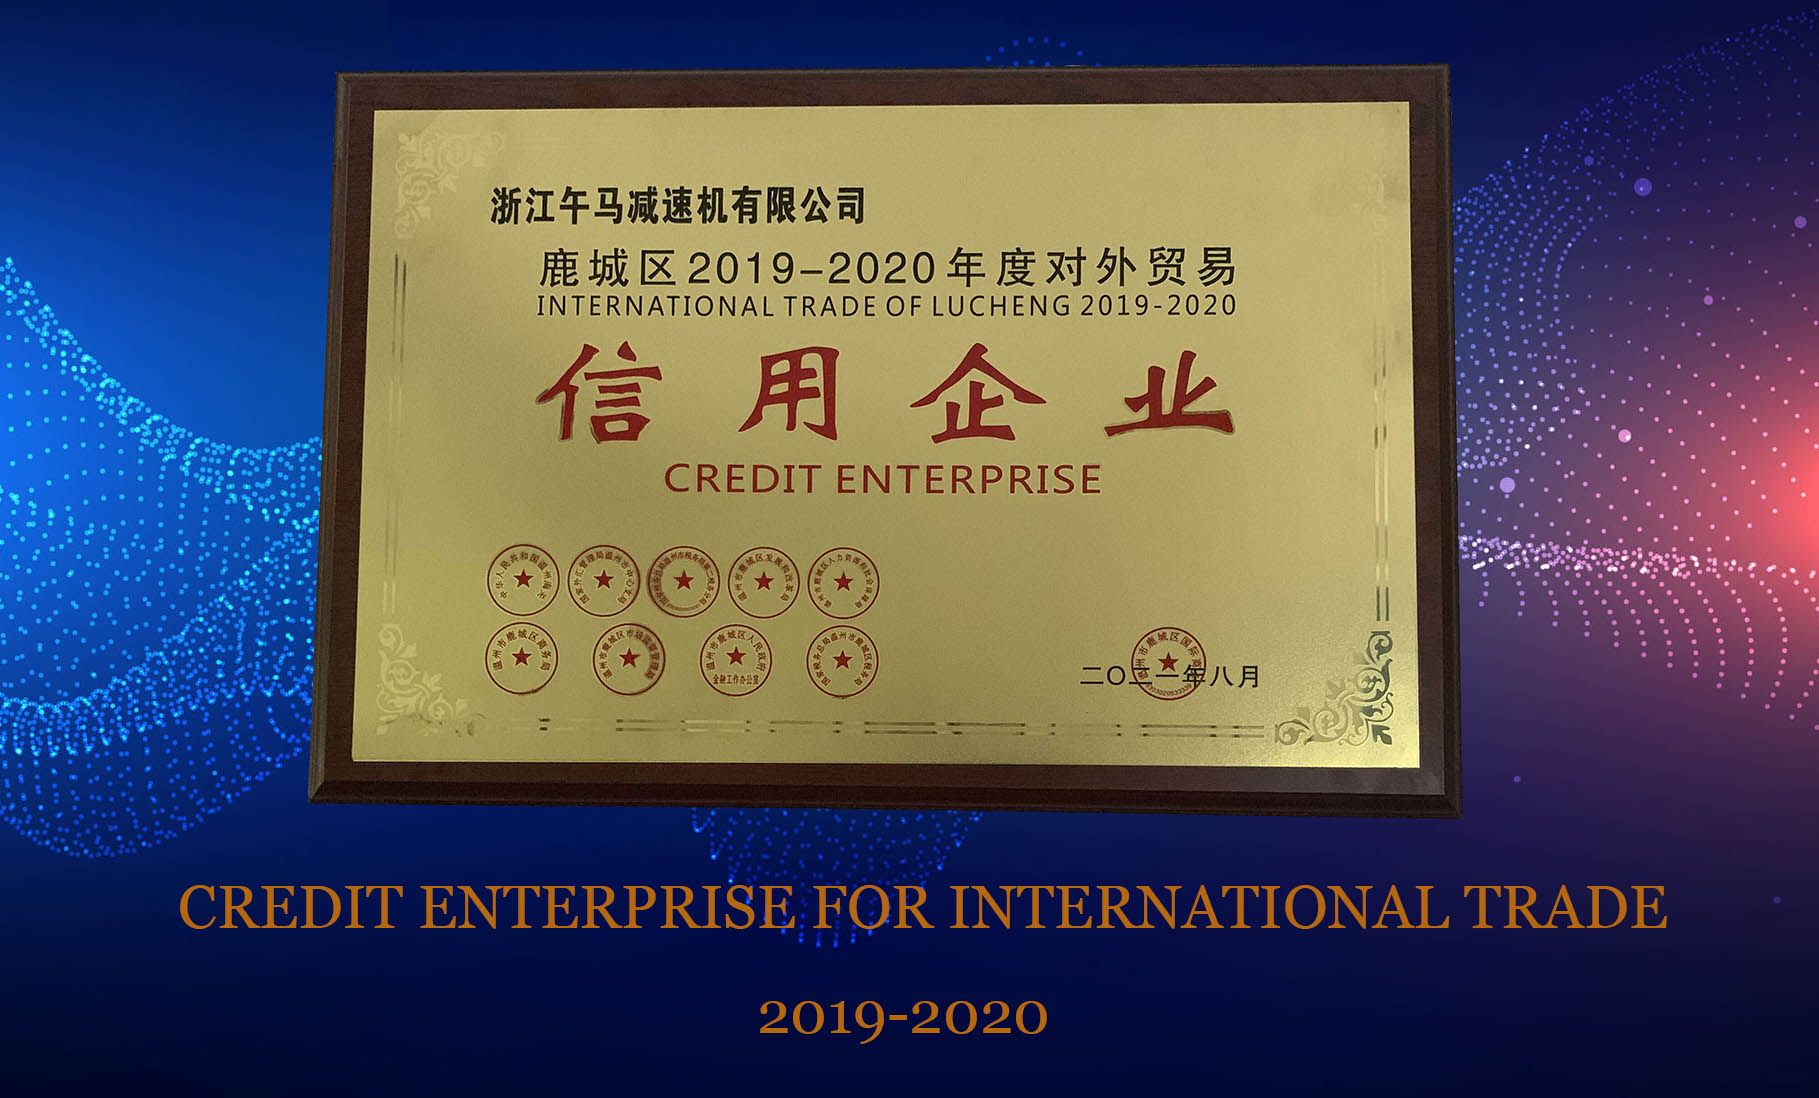 恭喜！午马被授予《2019-2020年度对外贸易信用领军企业》